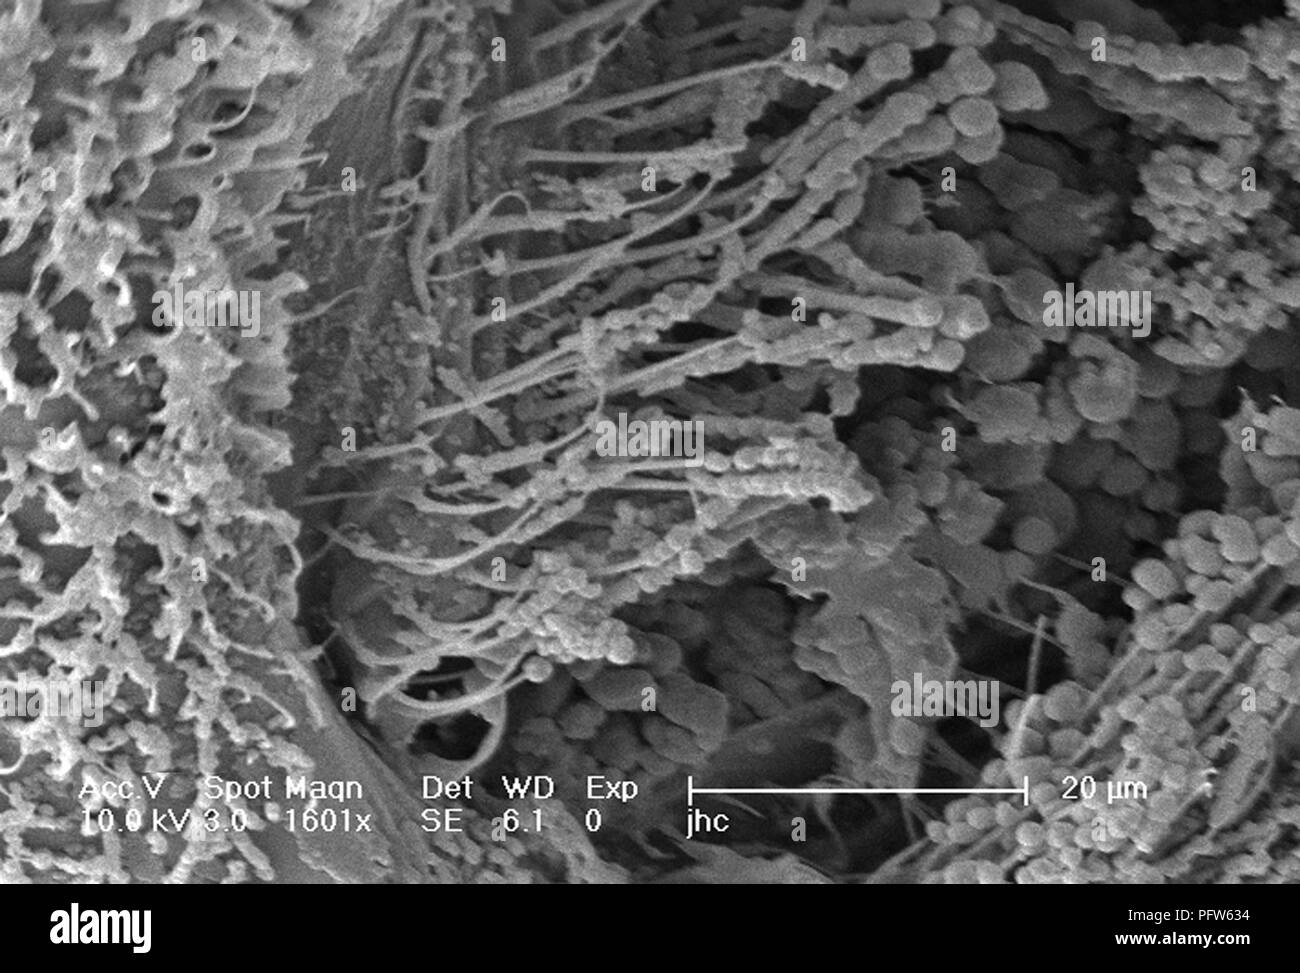 Caratteristiche morfologiche sulla superficie exoskeletal di Anopheles gambiae zanzara, rivelata nel 1601x di scansione ingrandita al microscopio elettronico (SEM) immagine, 2006. Immagine cortesia di centri per il controllo delle malattie (CDC) / Dr Paolo Howell. () Foto Stock